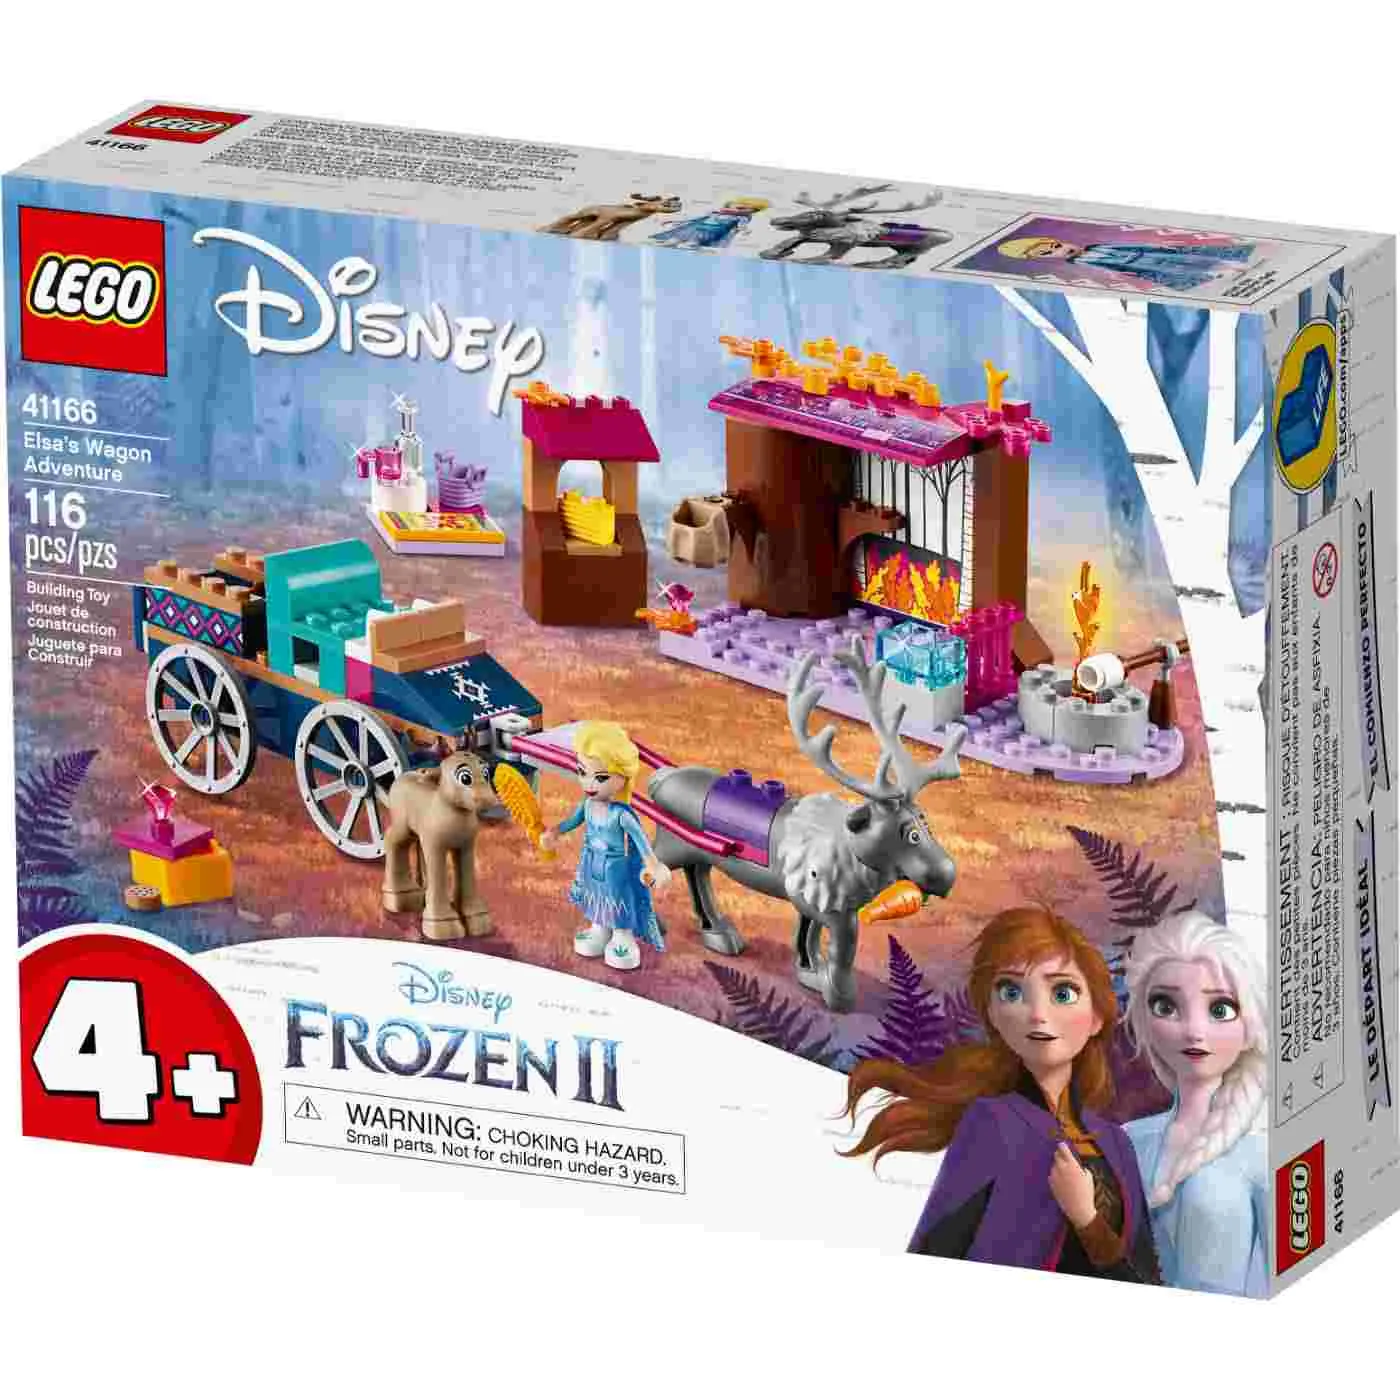 LEGO Disney Frozen Ii Aventura En Carreta de Elsa